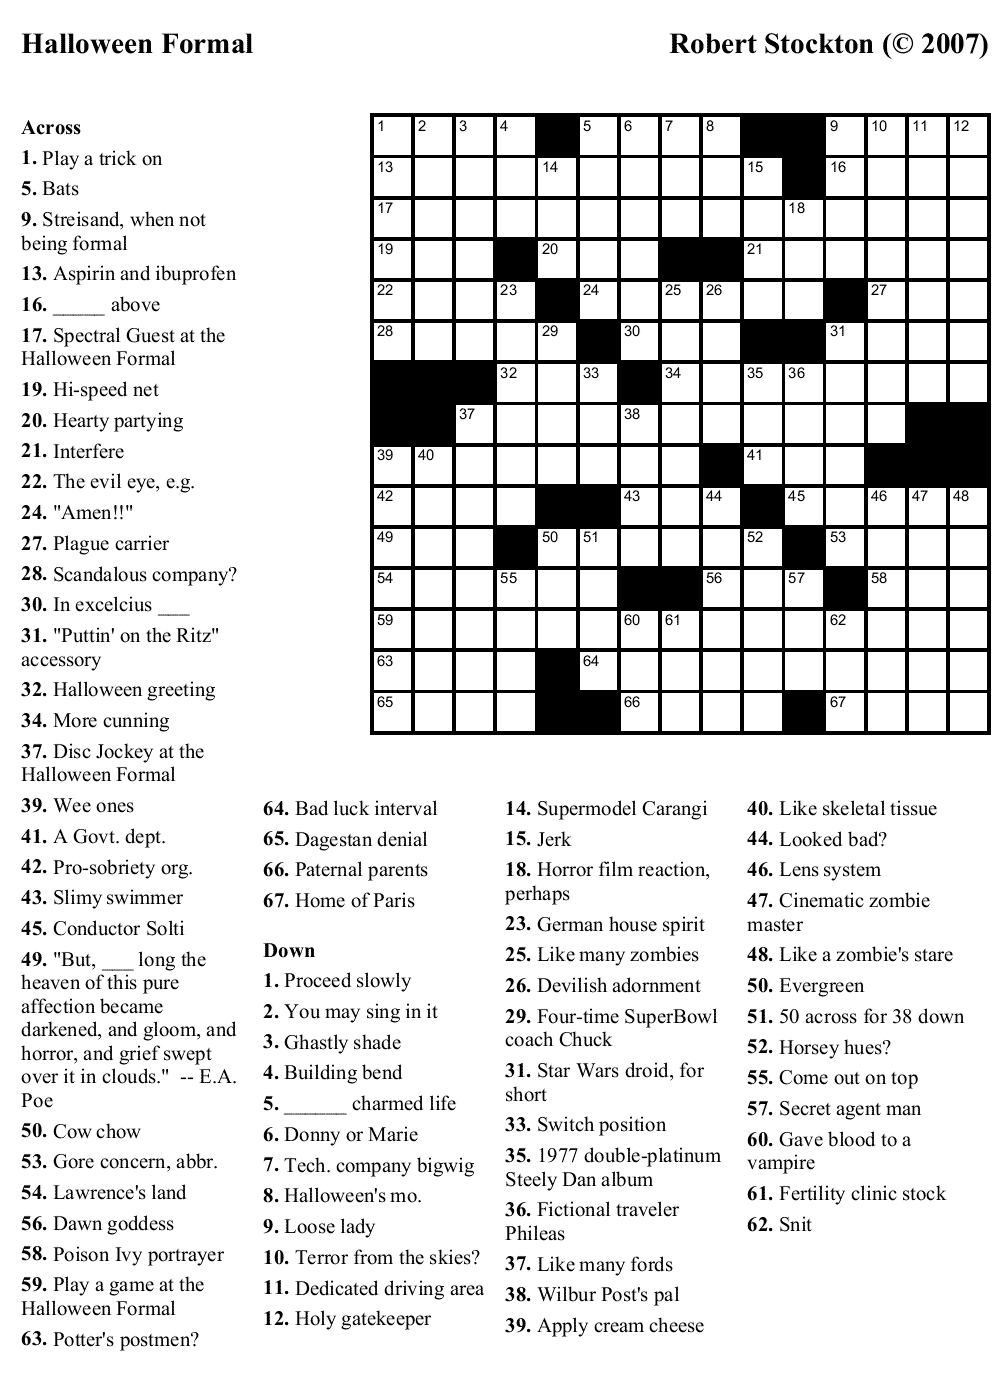 Medium Difficulty Printable Crossword Puzzles Printable Crossword Puzzles - Crossword Puzzles Easy Medium Hard